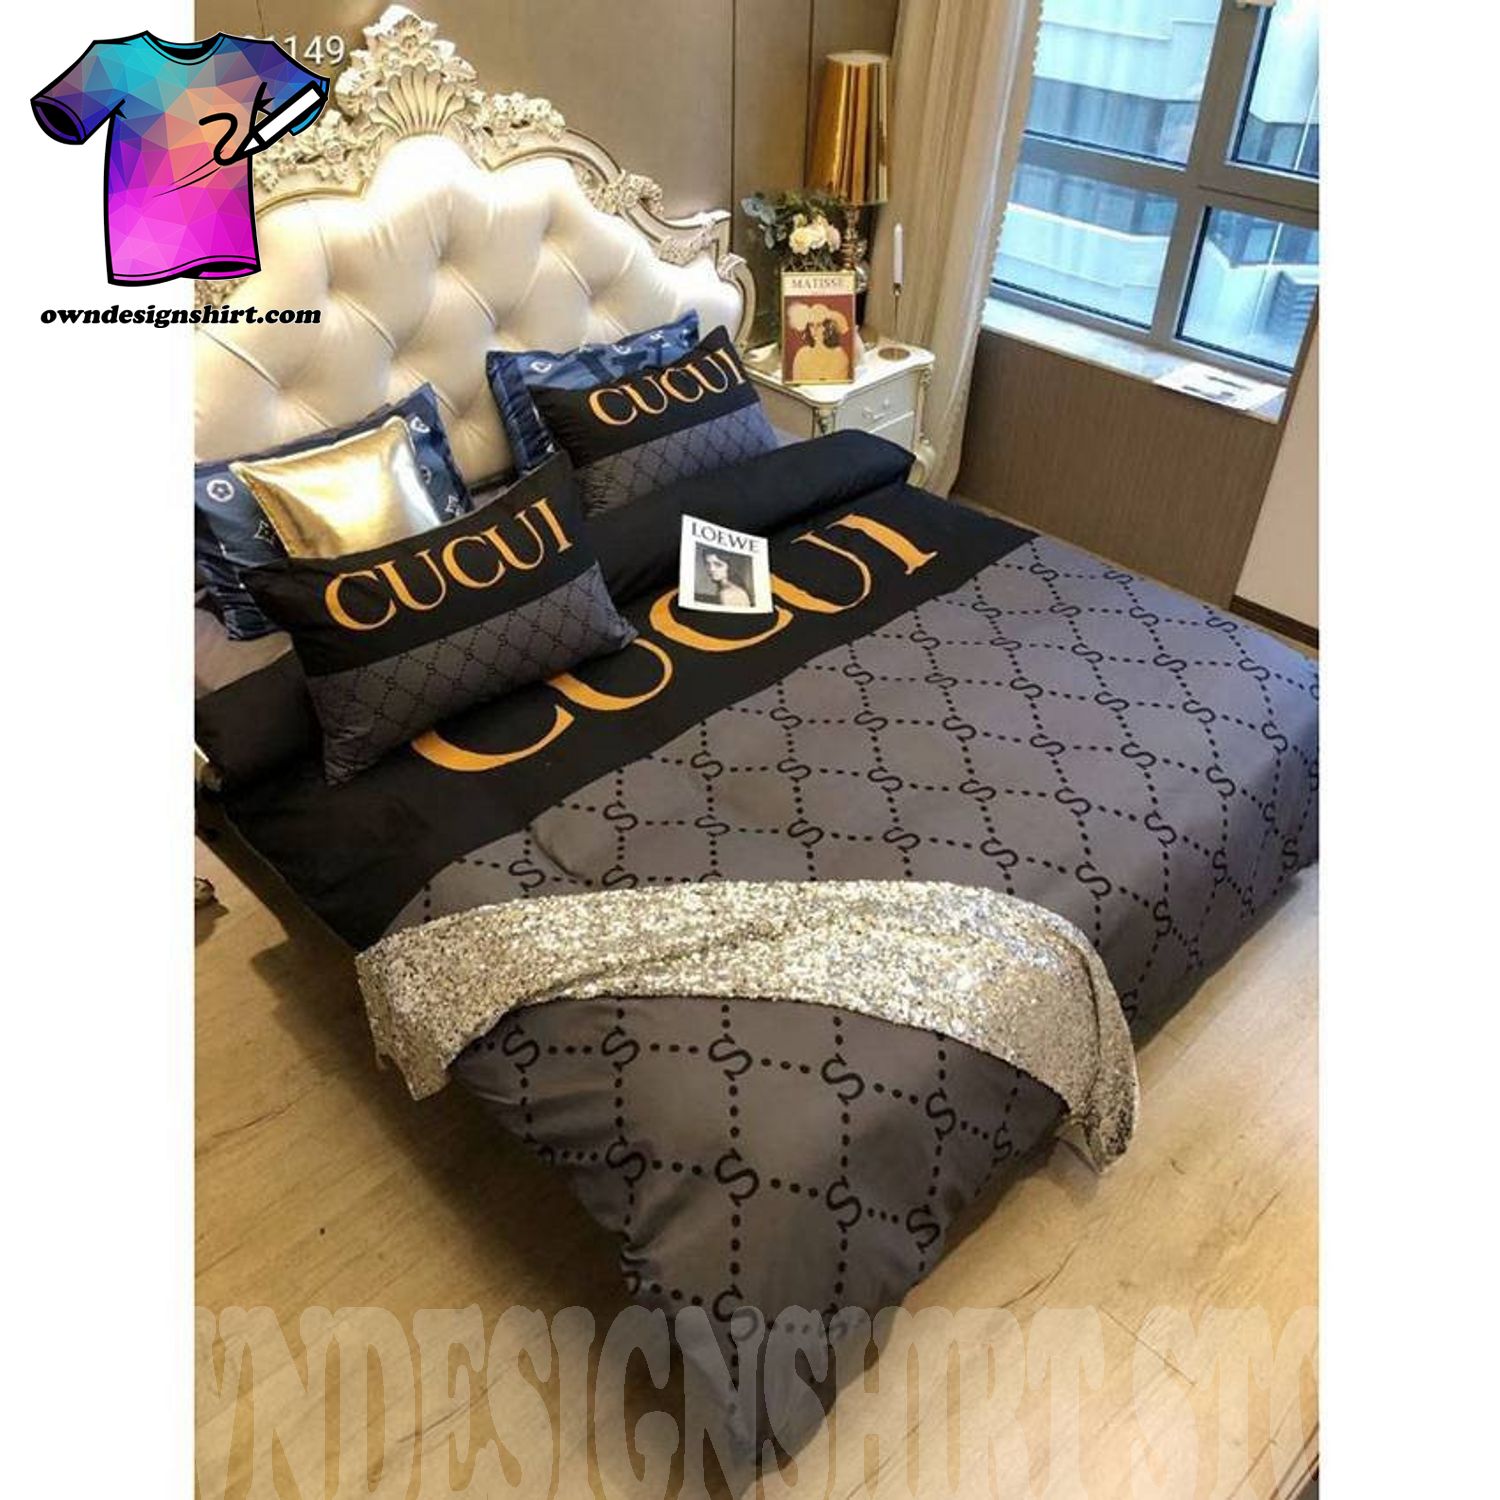 Gucci Louis Vuitton Symbol Bedding Sets